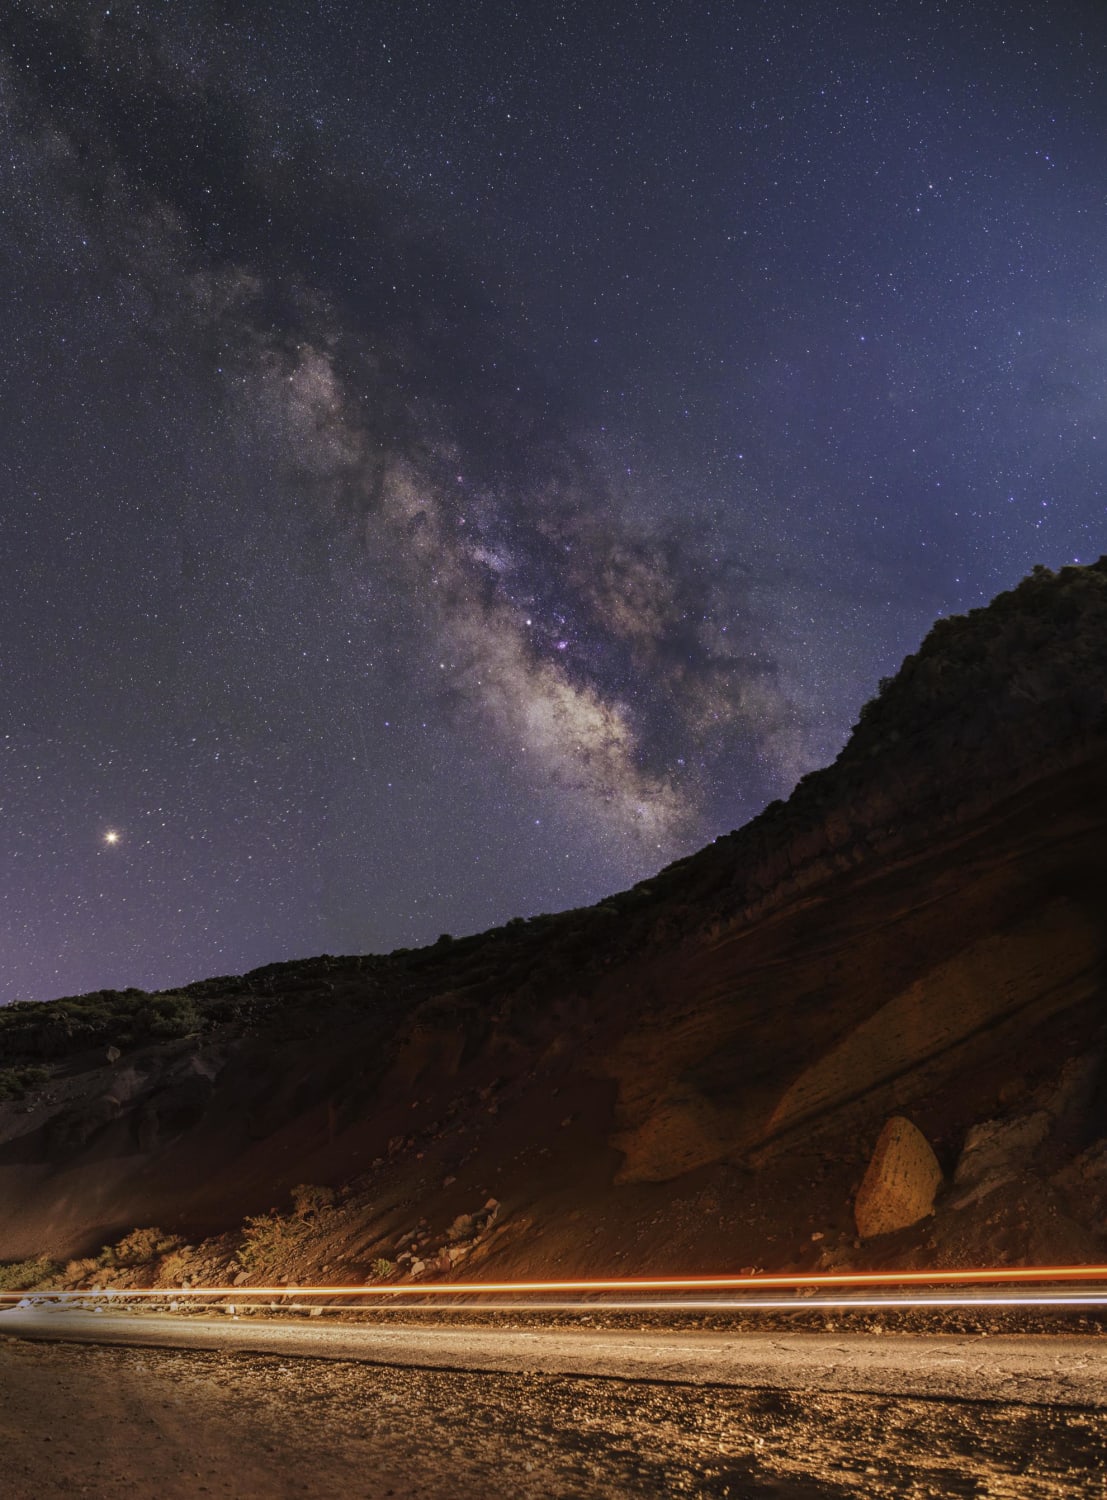 Mystic Lights & Milky Way at the Roque de Los Muchachos / Caldera de Taburiente National Park - La Palma